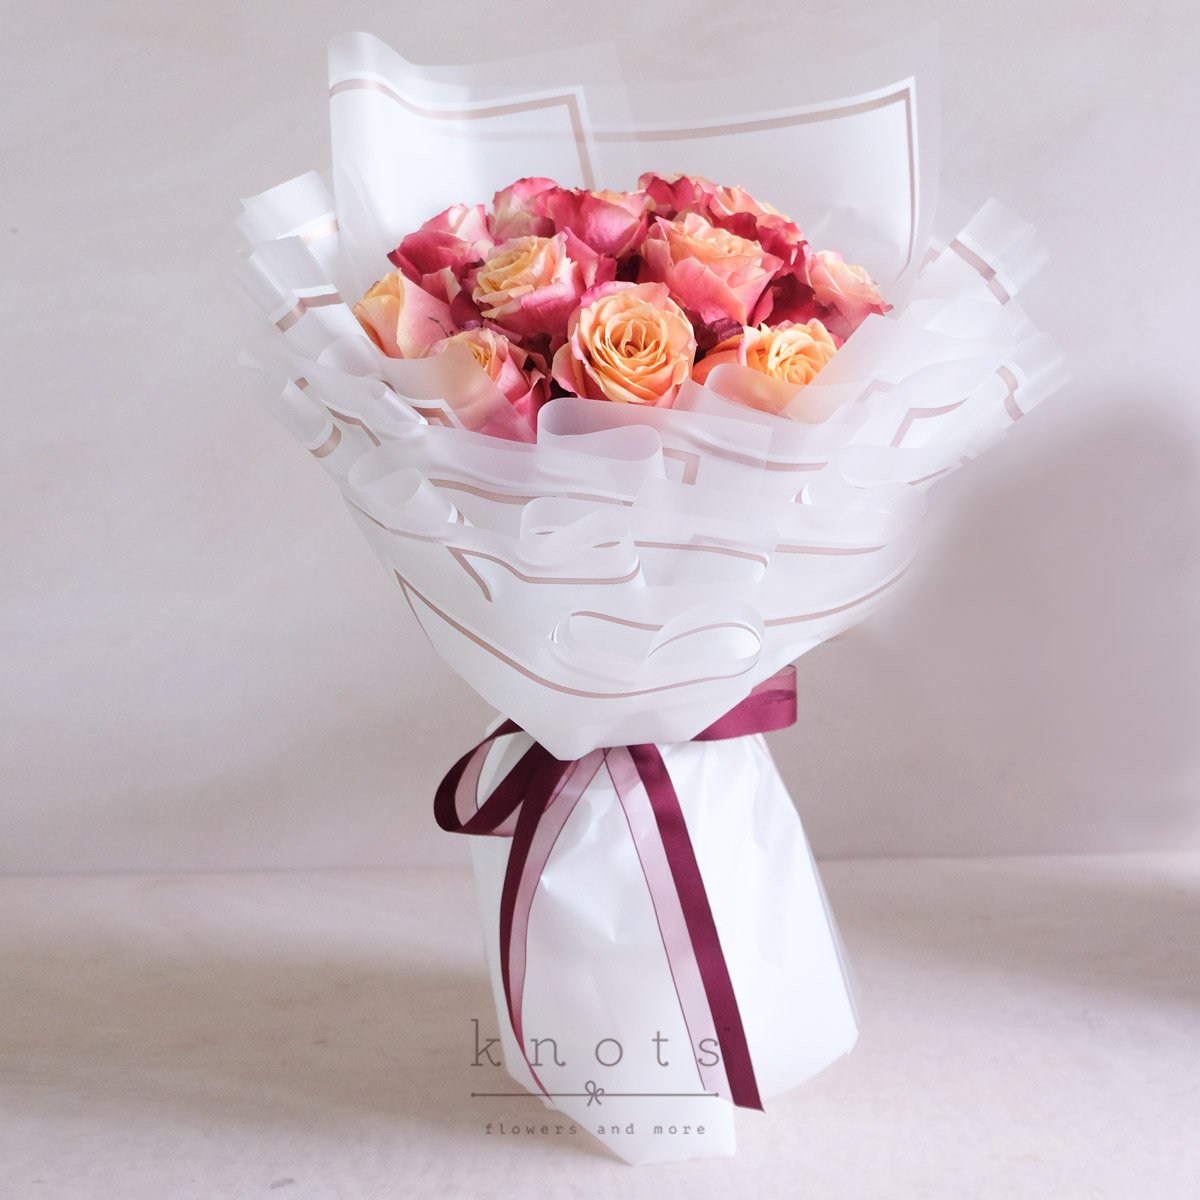 Throbbing Heartbeats (Ecuadorian Roses Bouquet)